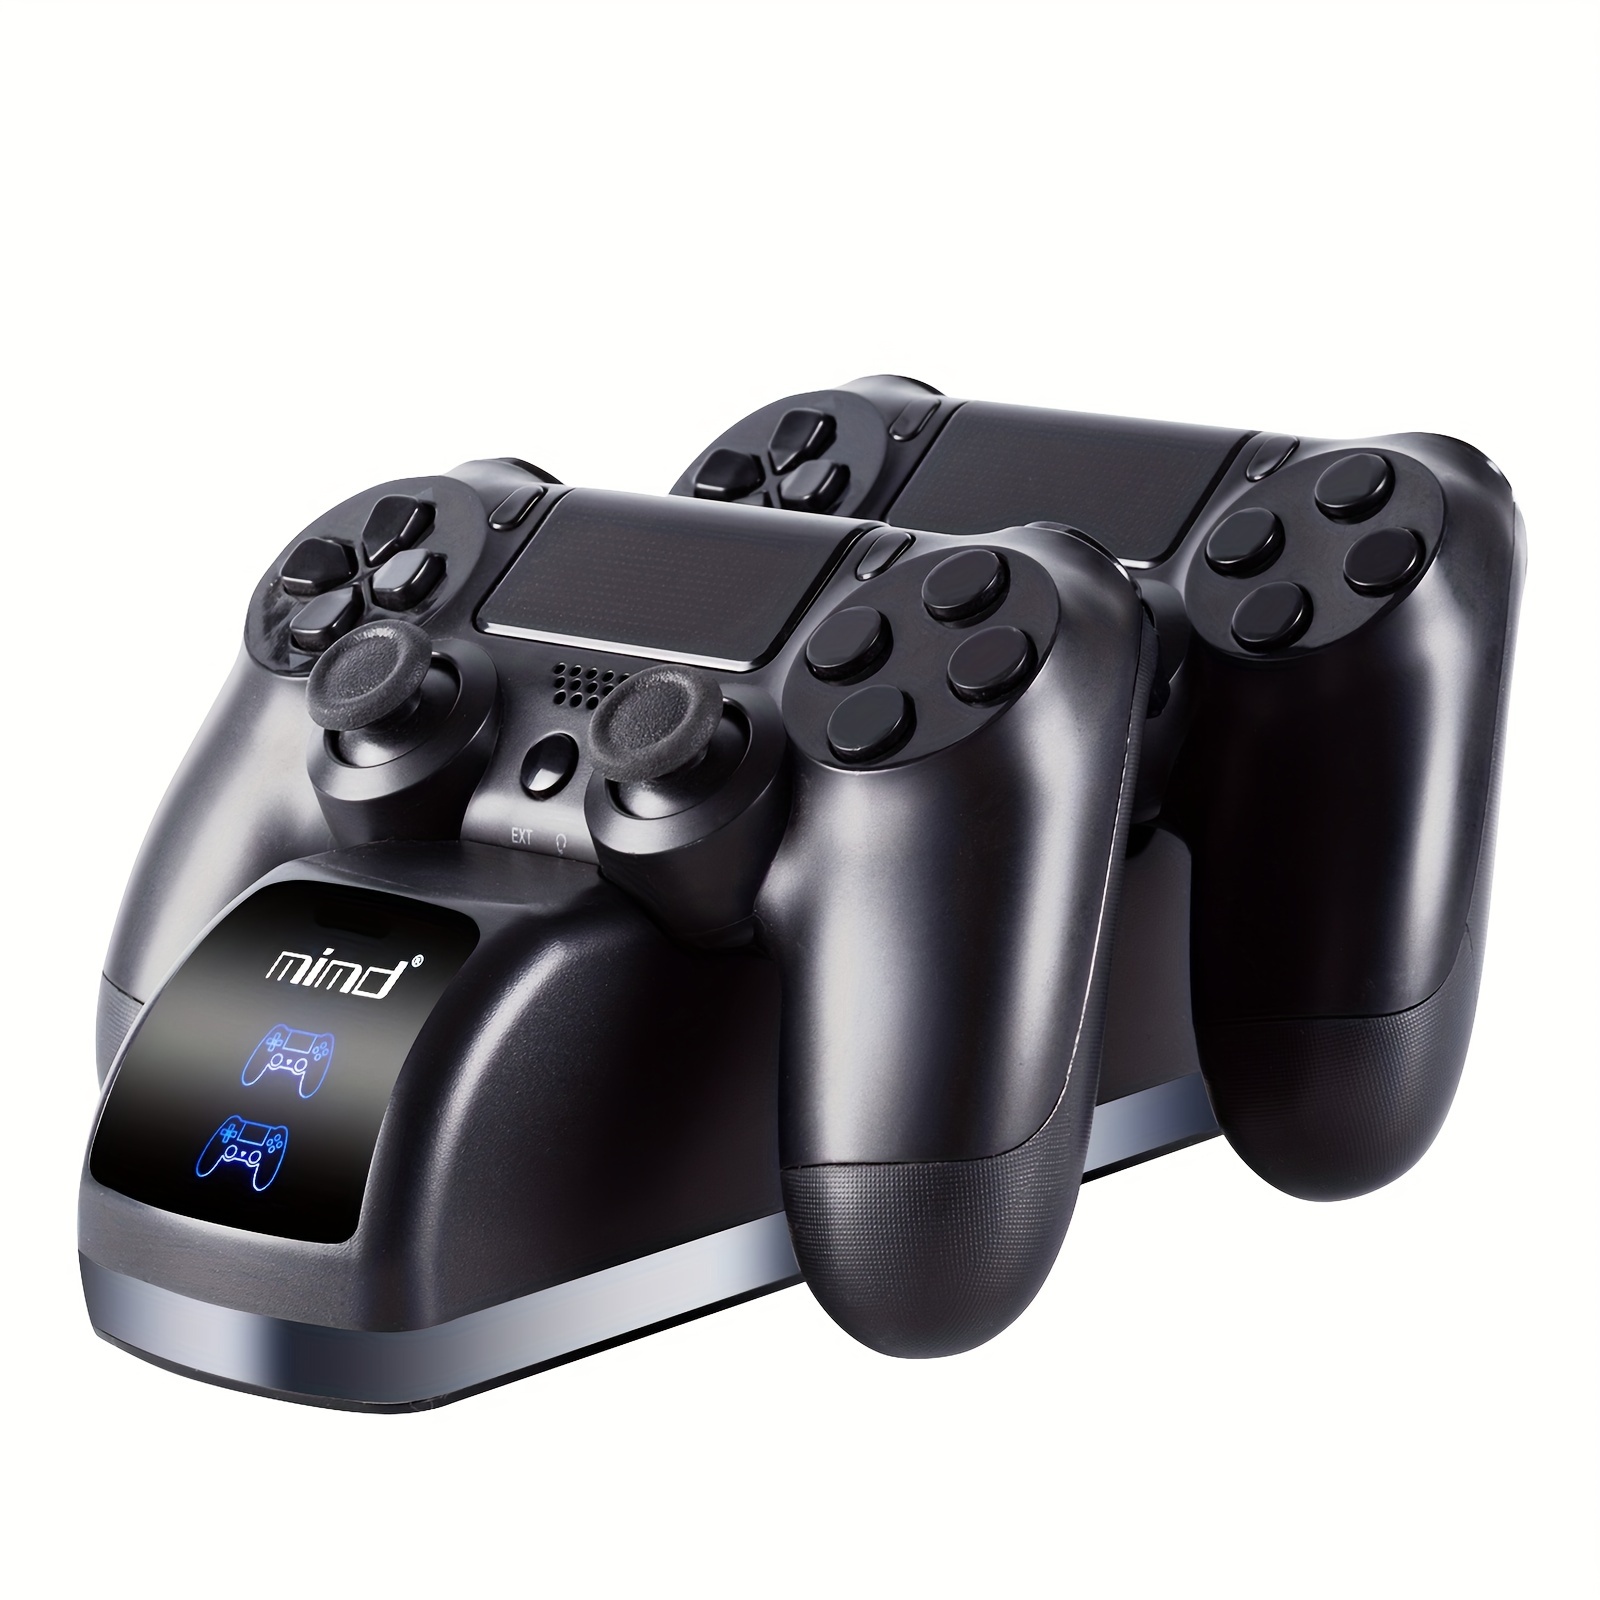 Station de Charge pour 2 Manettes PS4 Dualshock - Under Control